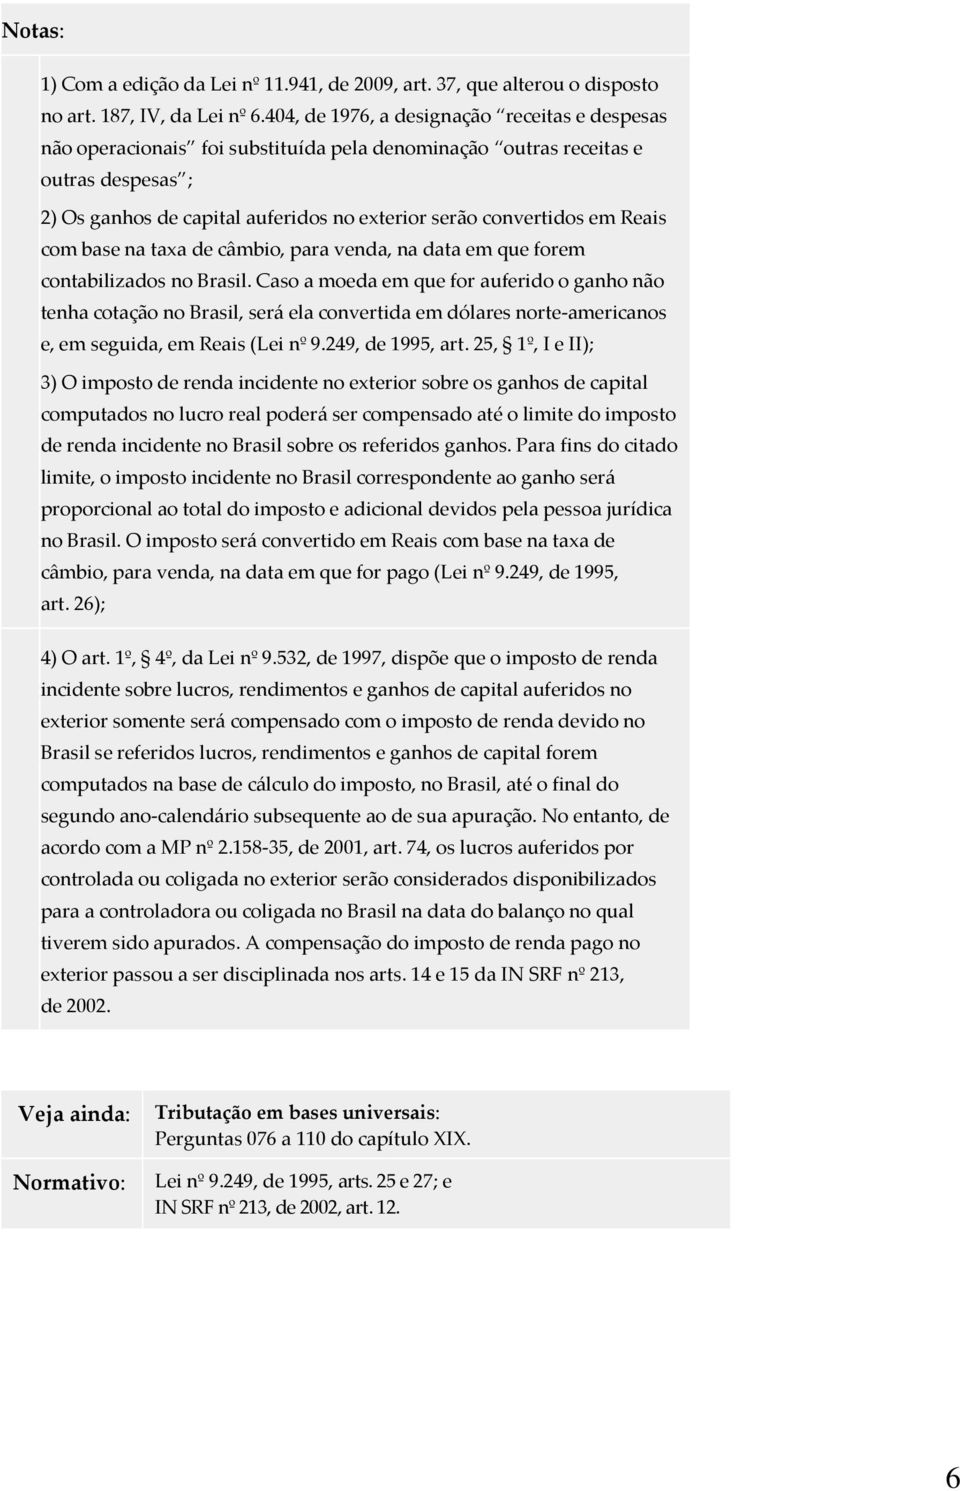 Reais com base na taxa de câmbio, para venda, na data em que forem contabilizados no Brasil.